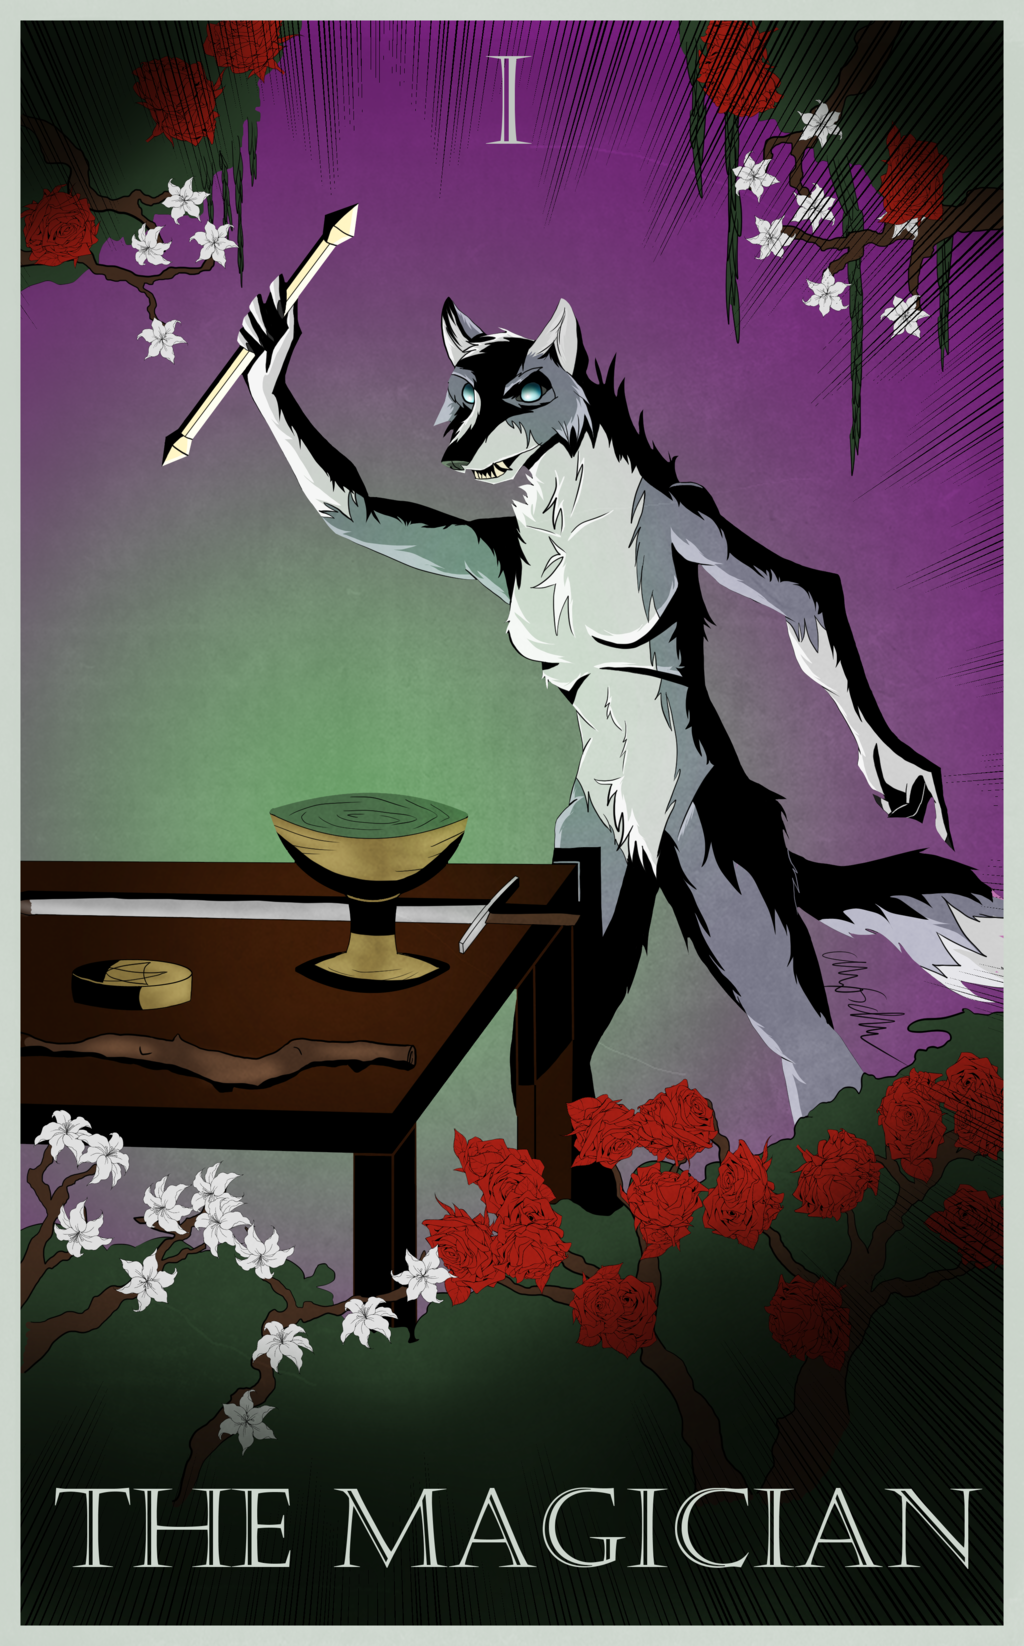 Most recent image: Tarot Card - The Magician